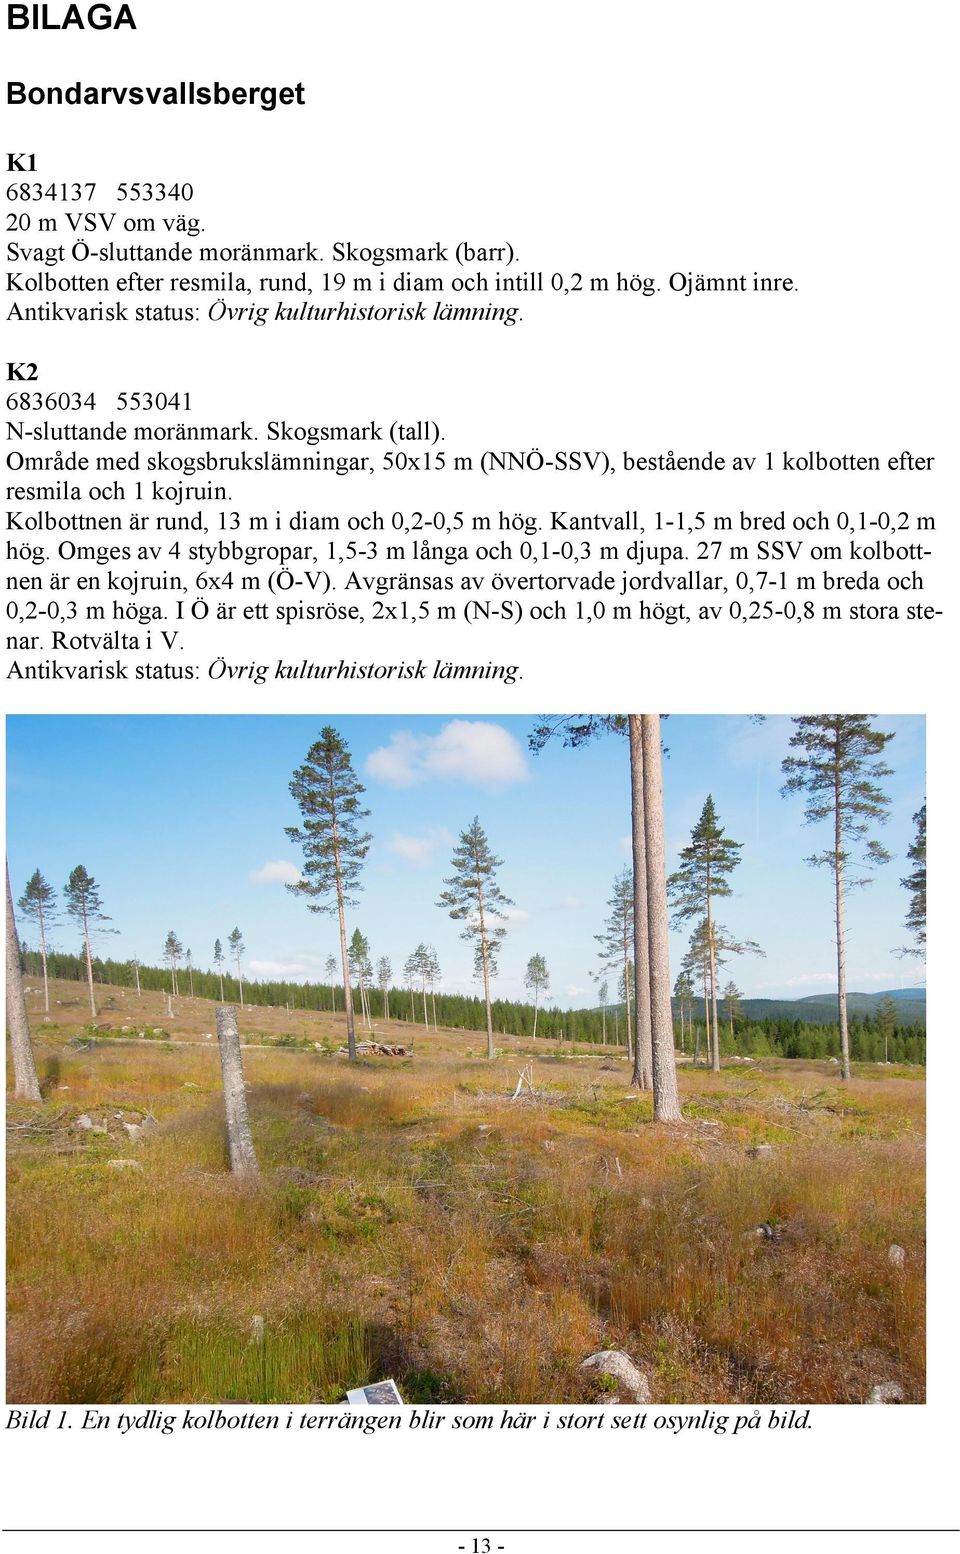 Område med skogsbrukslämningar, 50x15 m (NNÖ-SSV), bestående av 1 kolbotten efter resmila och 1 kojruin. Kolbottnen är rund, 13 m i diam och 0,2-0,5 m hög. Kantvall, 1-1,5 m bred och 0,1-0,2 m hög.